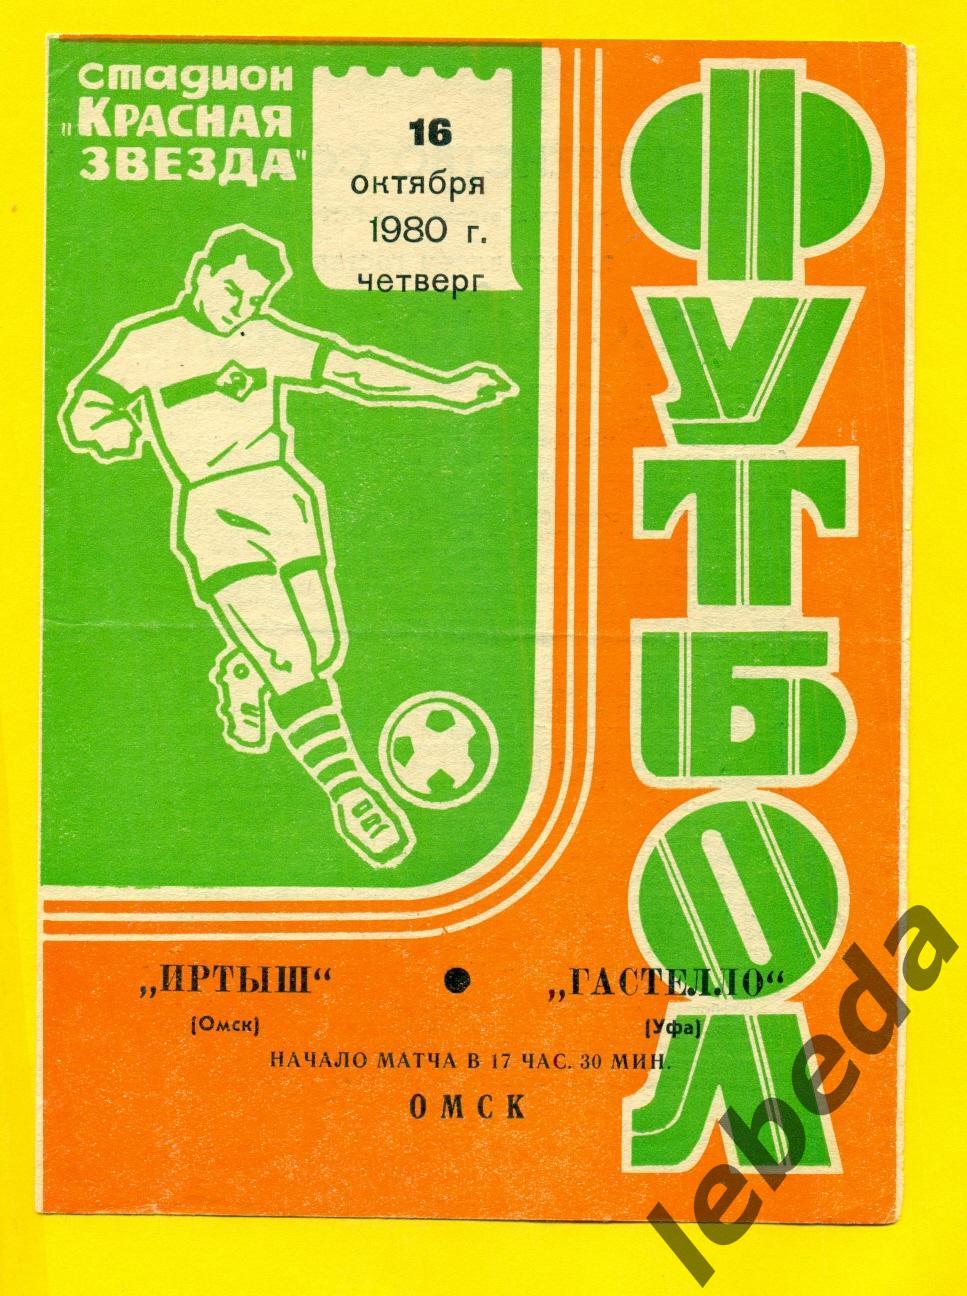 Иртыш Омск - Гастелло Уфа - 1980 г.(16.10.80.)